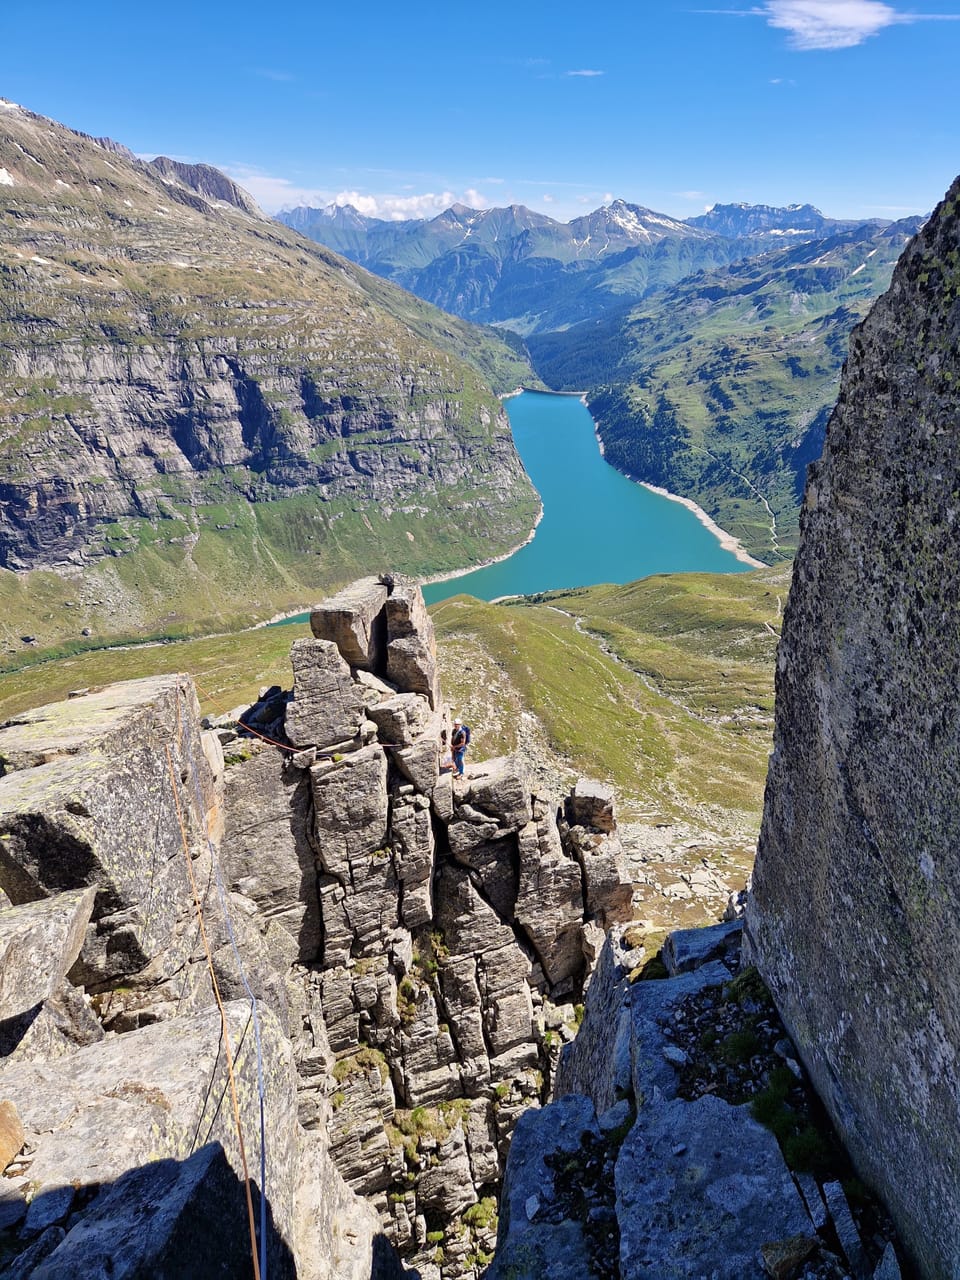 Blick von einem Felsen auf einen Bergsee in den Alpen.